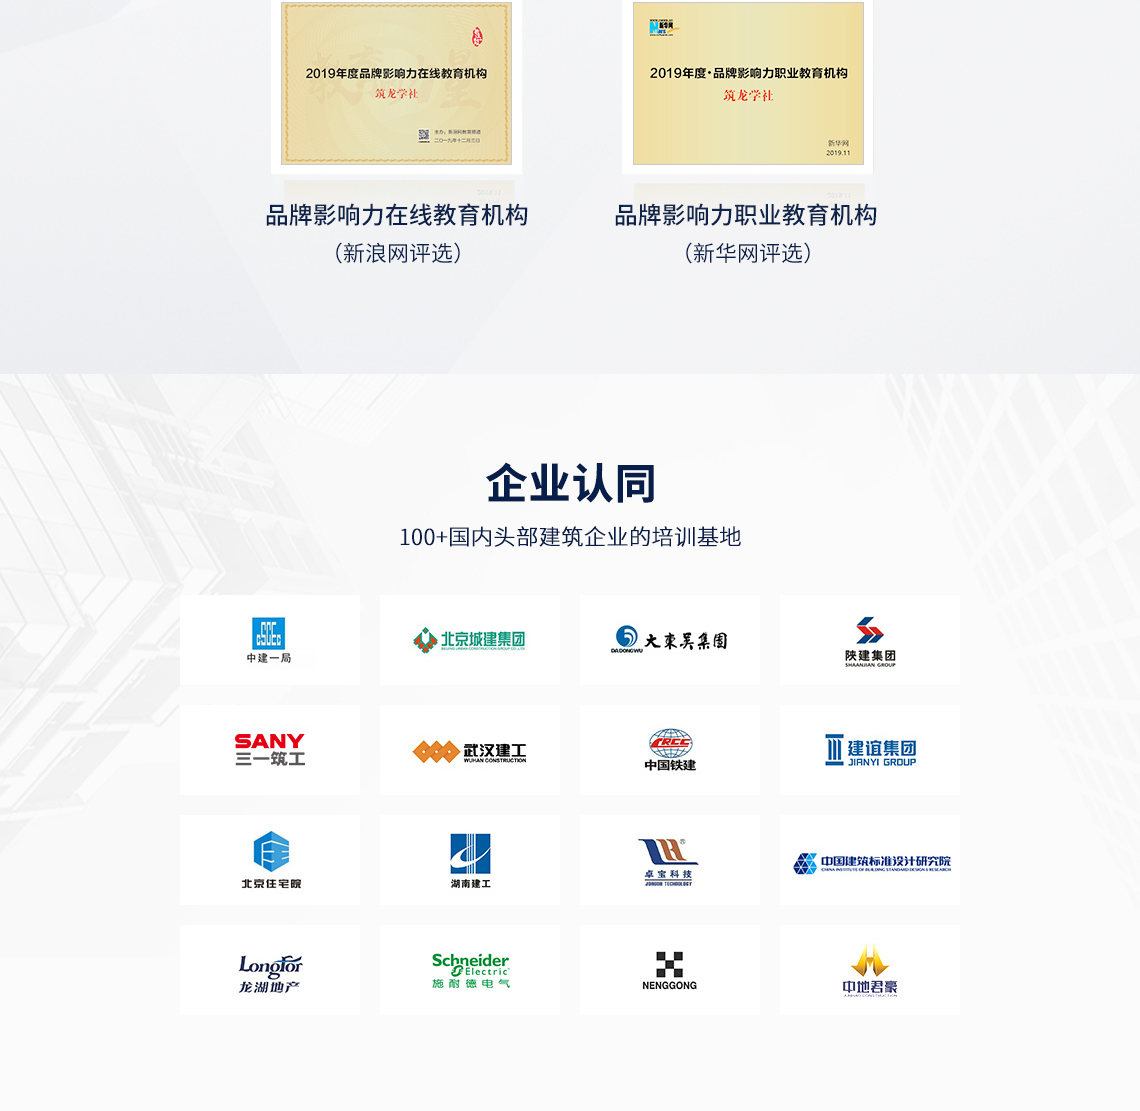 “2021中国房地产技术创新大会”于10月28-29日在南京召开“大会以“聚势创新·共享未来”为主题，探讨当前形势下技术、产品、业态创新，以提升住宅产品质量，延长住宅产品寿命，为消费者提供更多优质、低碳、绿色产品。中国房地产业协会智慧建筑研究中心承办“双碳目标与智慧建筑”分论坛，交流分享双碳目标下智慧建筑政策与标准、典型案例与经验、创新技术产品与实施方案，共商智慧建筑与智能建造发展大计。